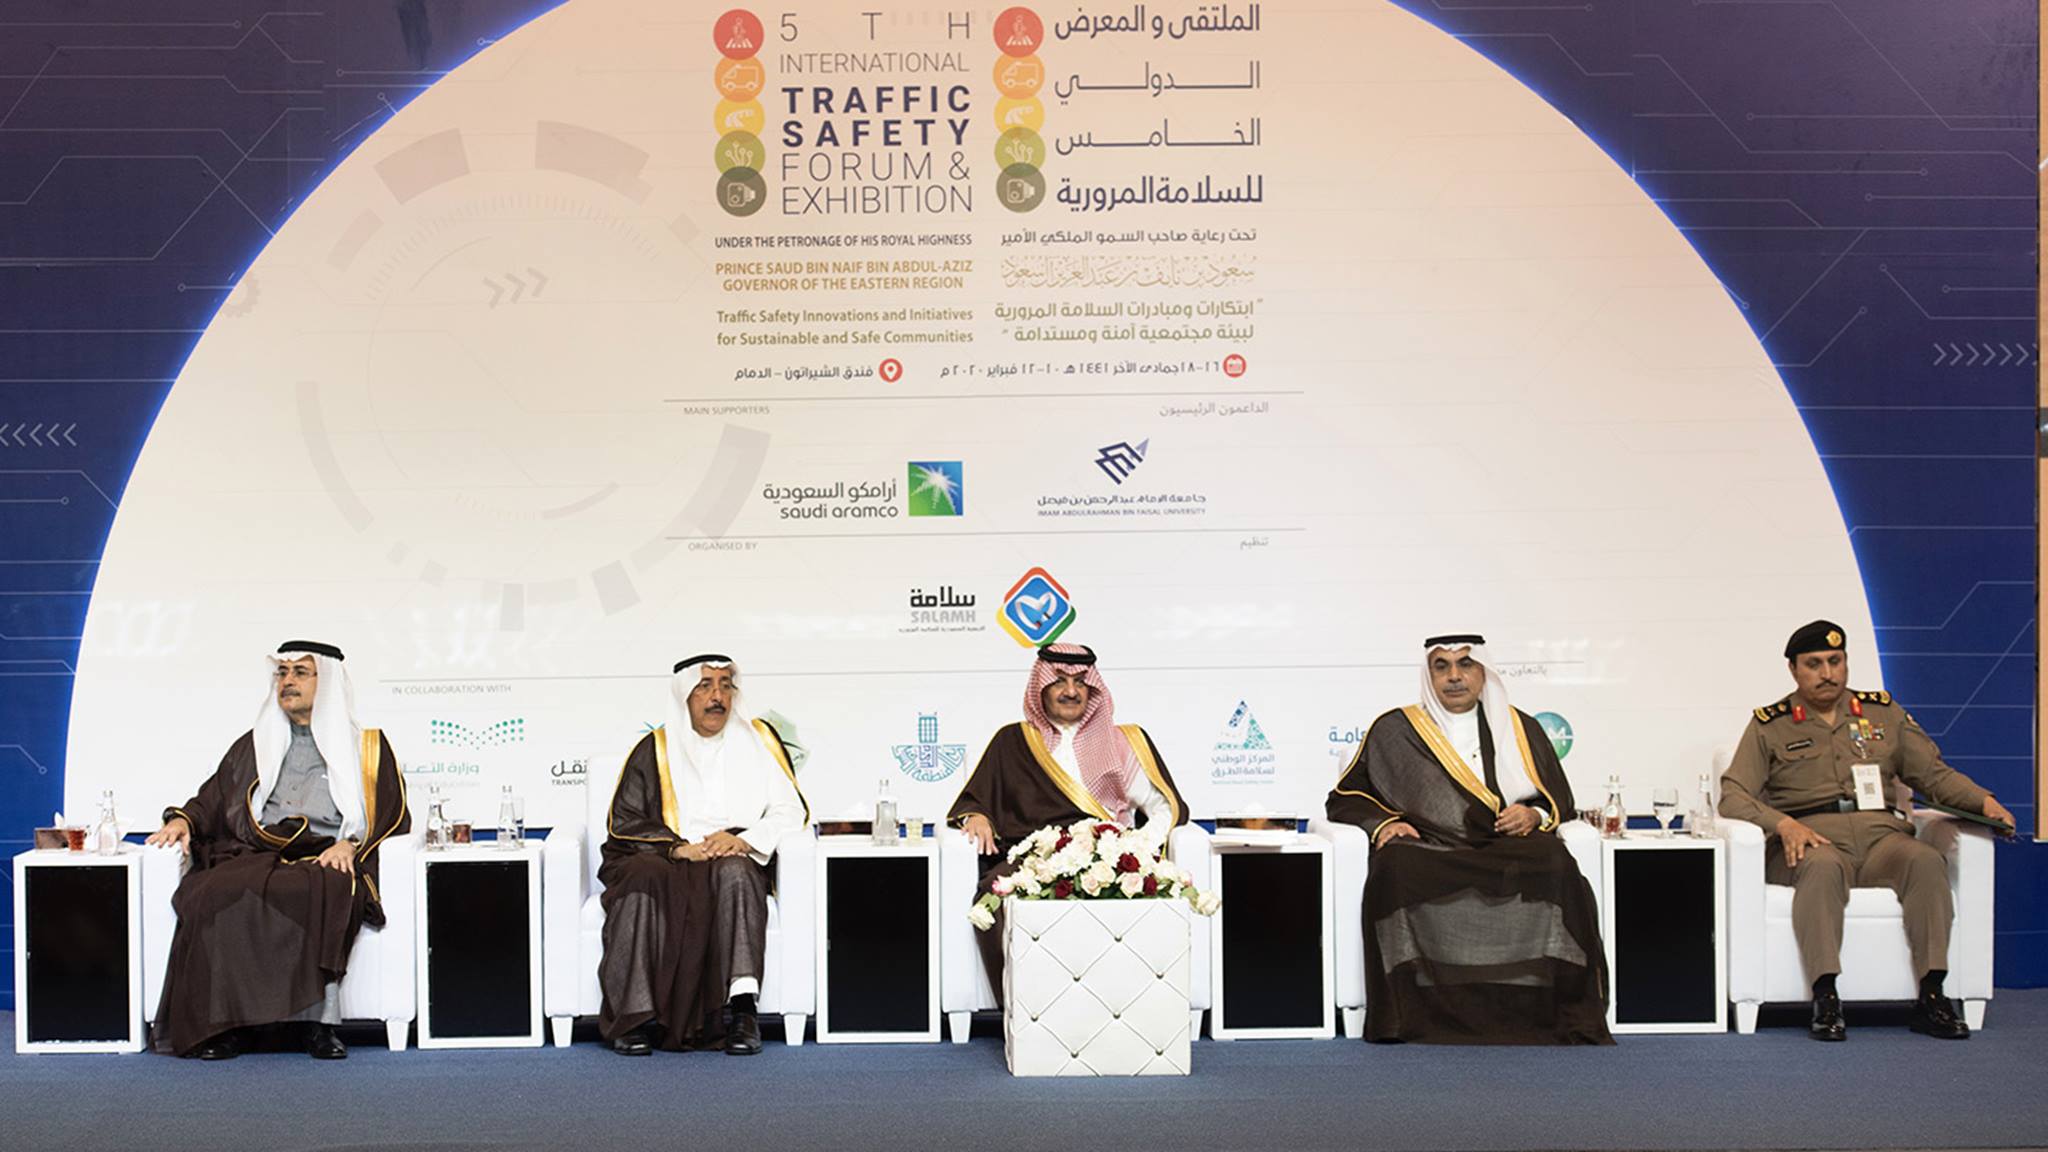 أرامكو السعودية تدعم جهود لجنة السلامة المرورية بحلول غير تقليدية تُسهم في تقليل الحوادث